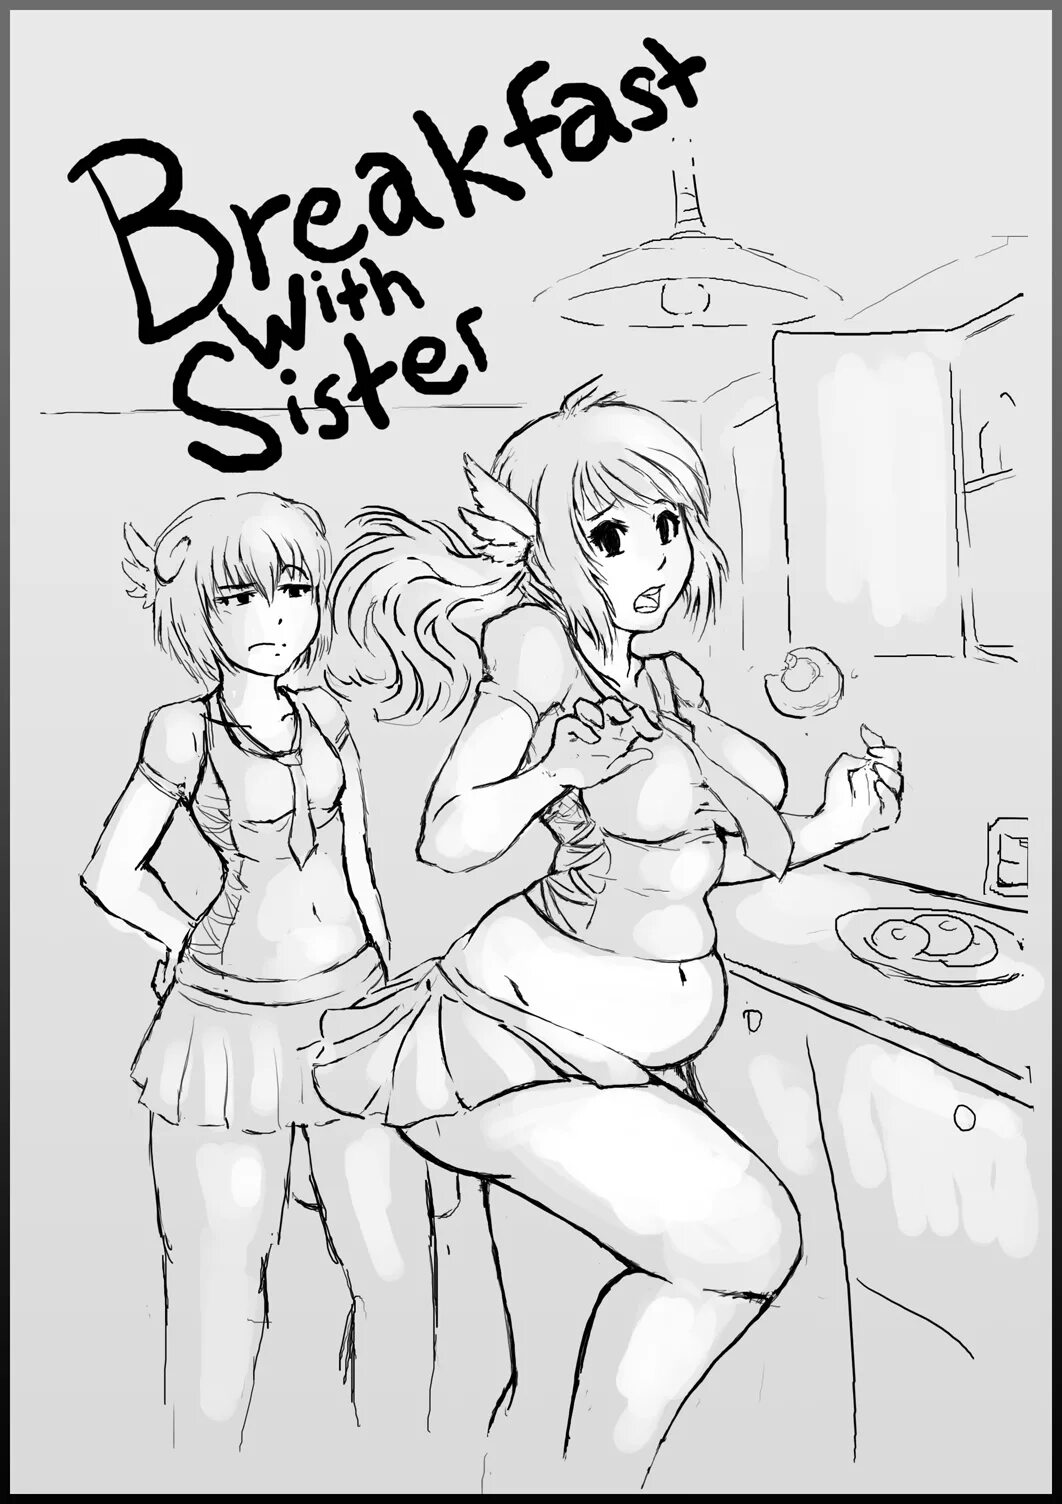 Футанари сёстры. Футанари сестра комиксы. Комиксы про сестер. Завтрак с сестрой Kipteitei. Comix sisters